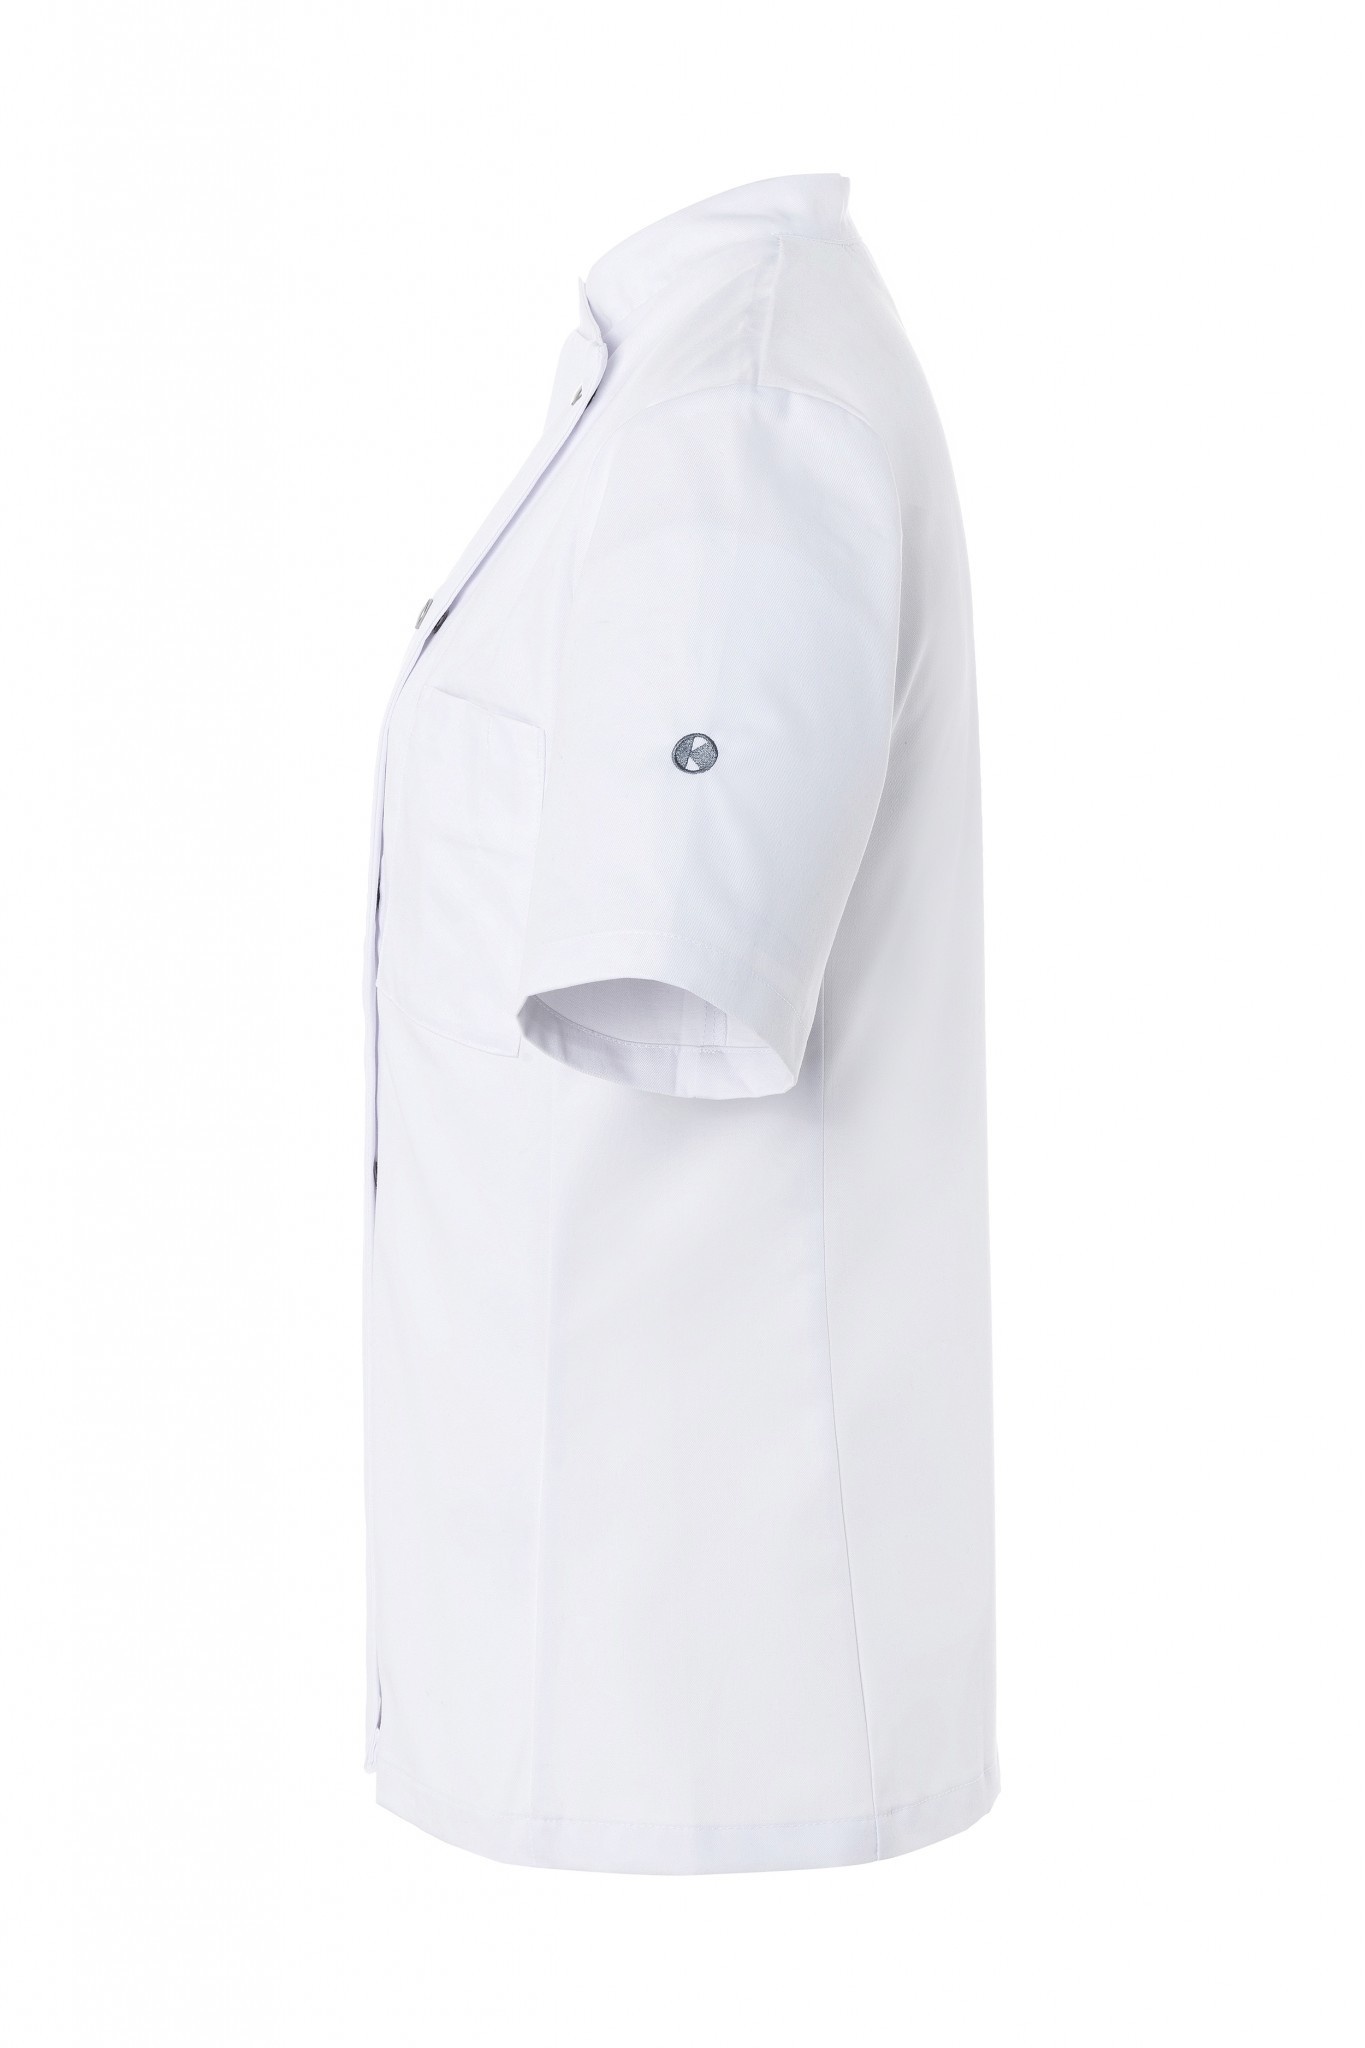 Damenkochjacke Greta | Weiß | 65% Polyester / 35% Baumwolle | Erhältlich in 9 Größen